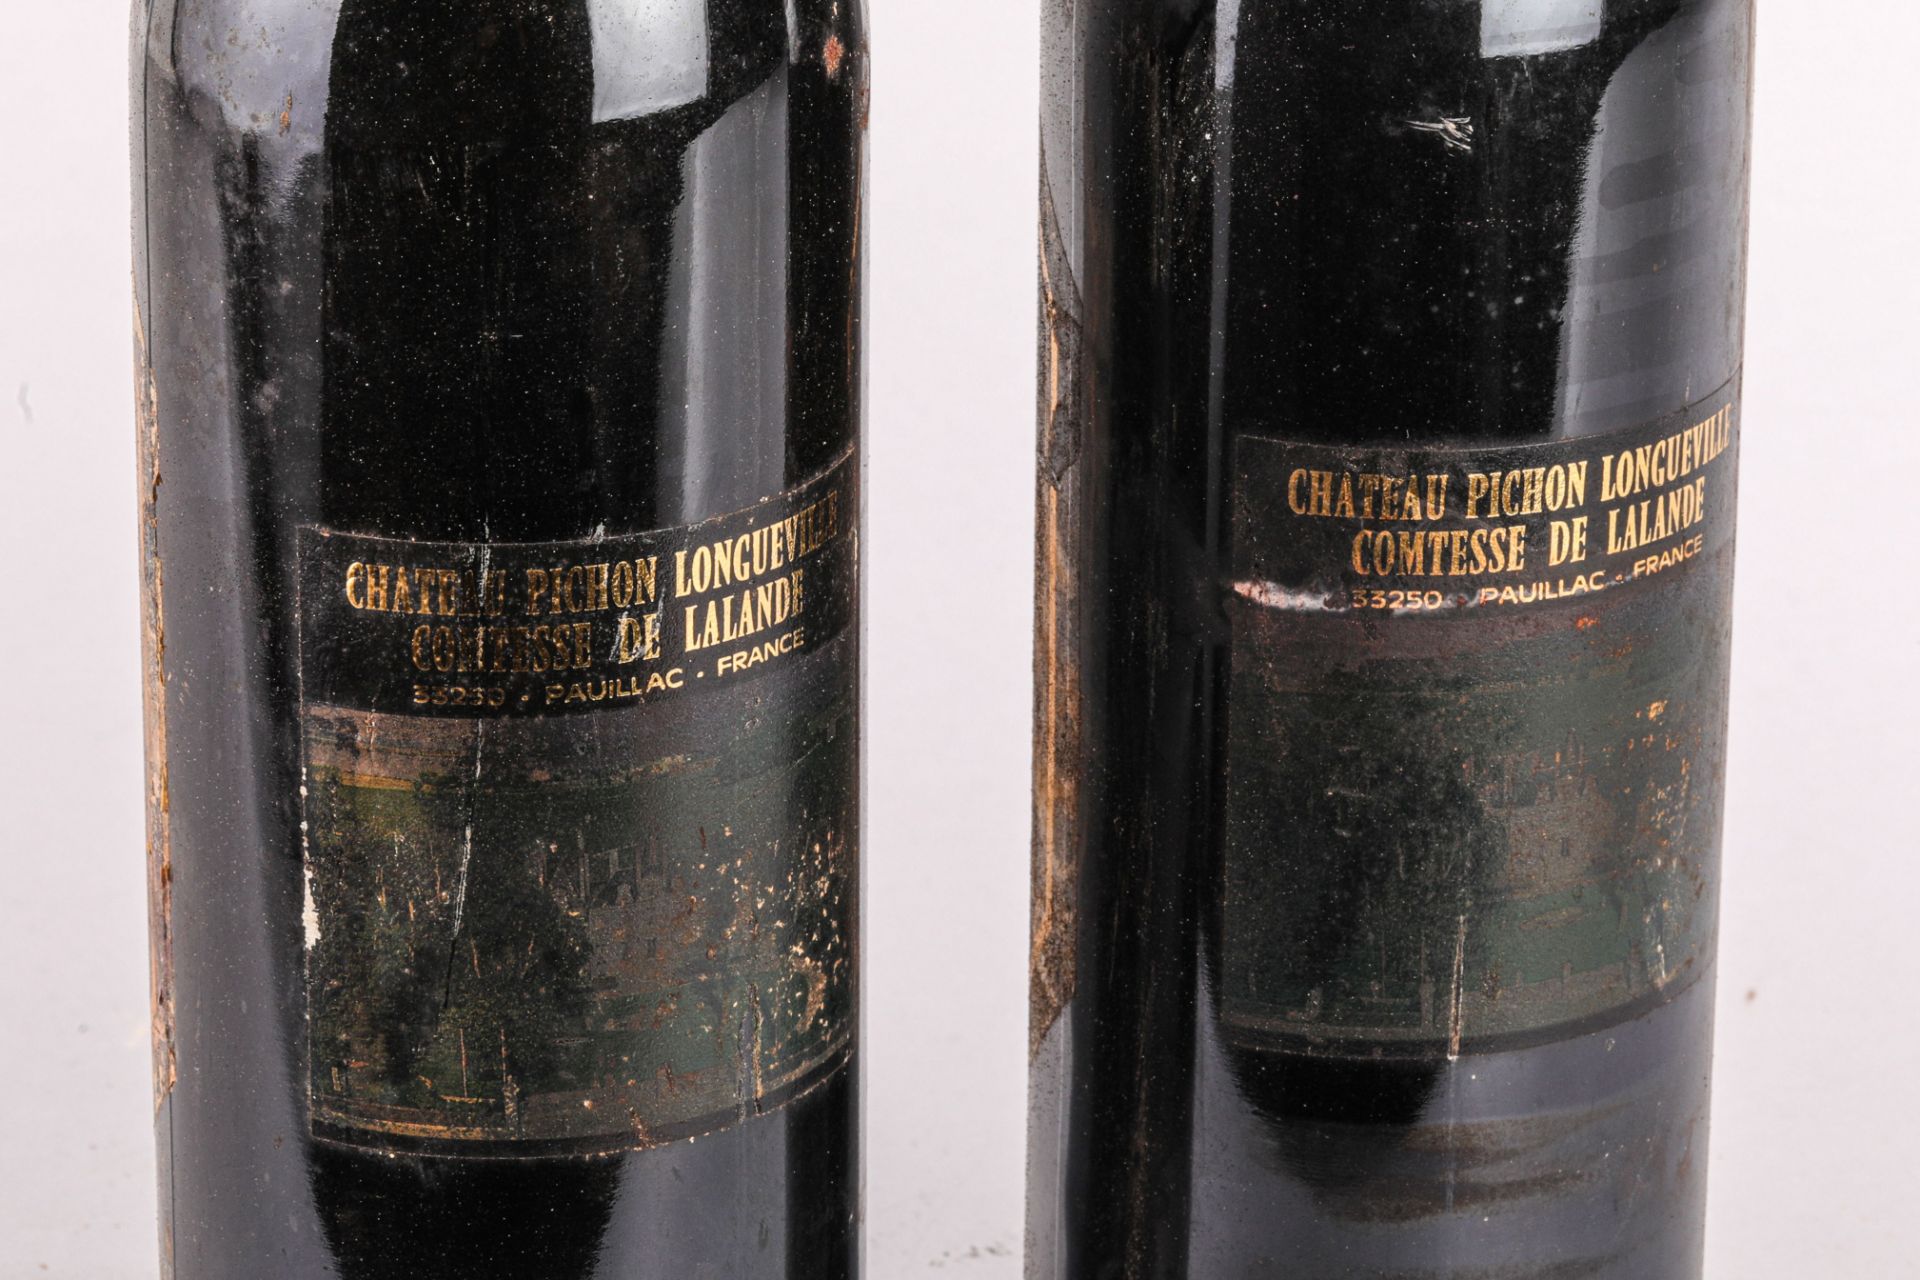 CHÂTEAU PICHON LONGUEVILLE COMTESSE DE LALANDE 2 bouteilles Grand cru classé Pauillac 1989 - Bild 5 aus 5